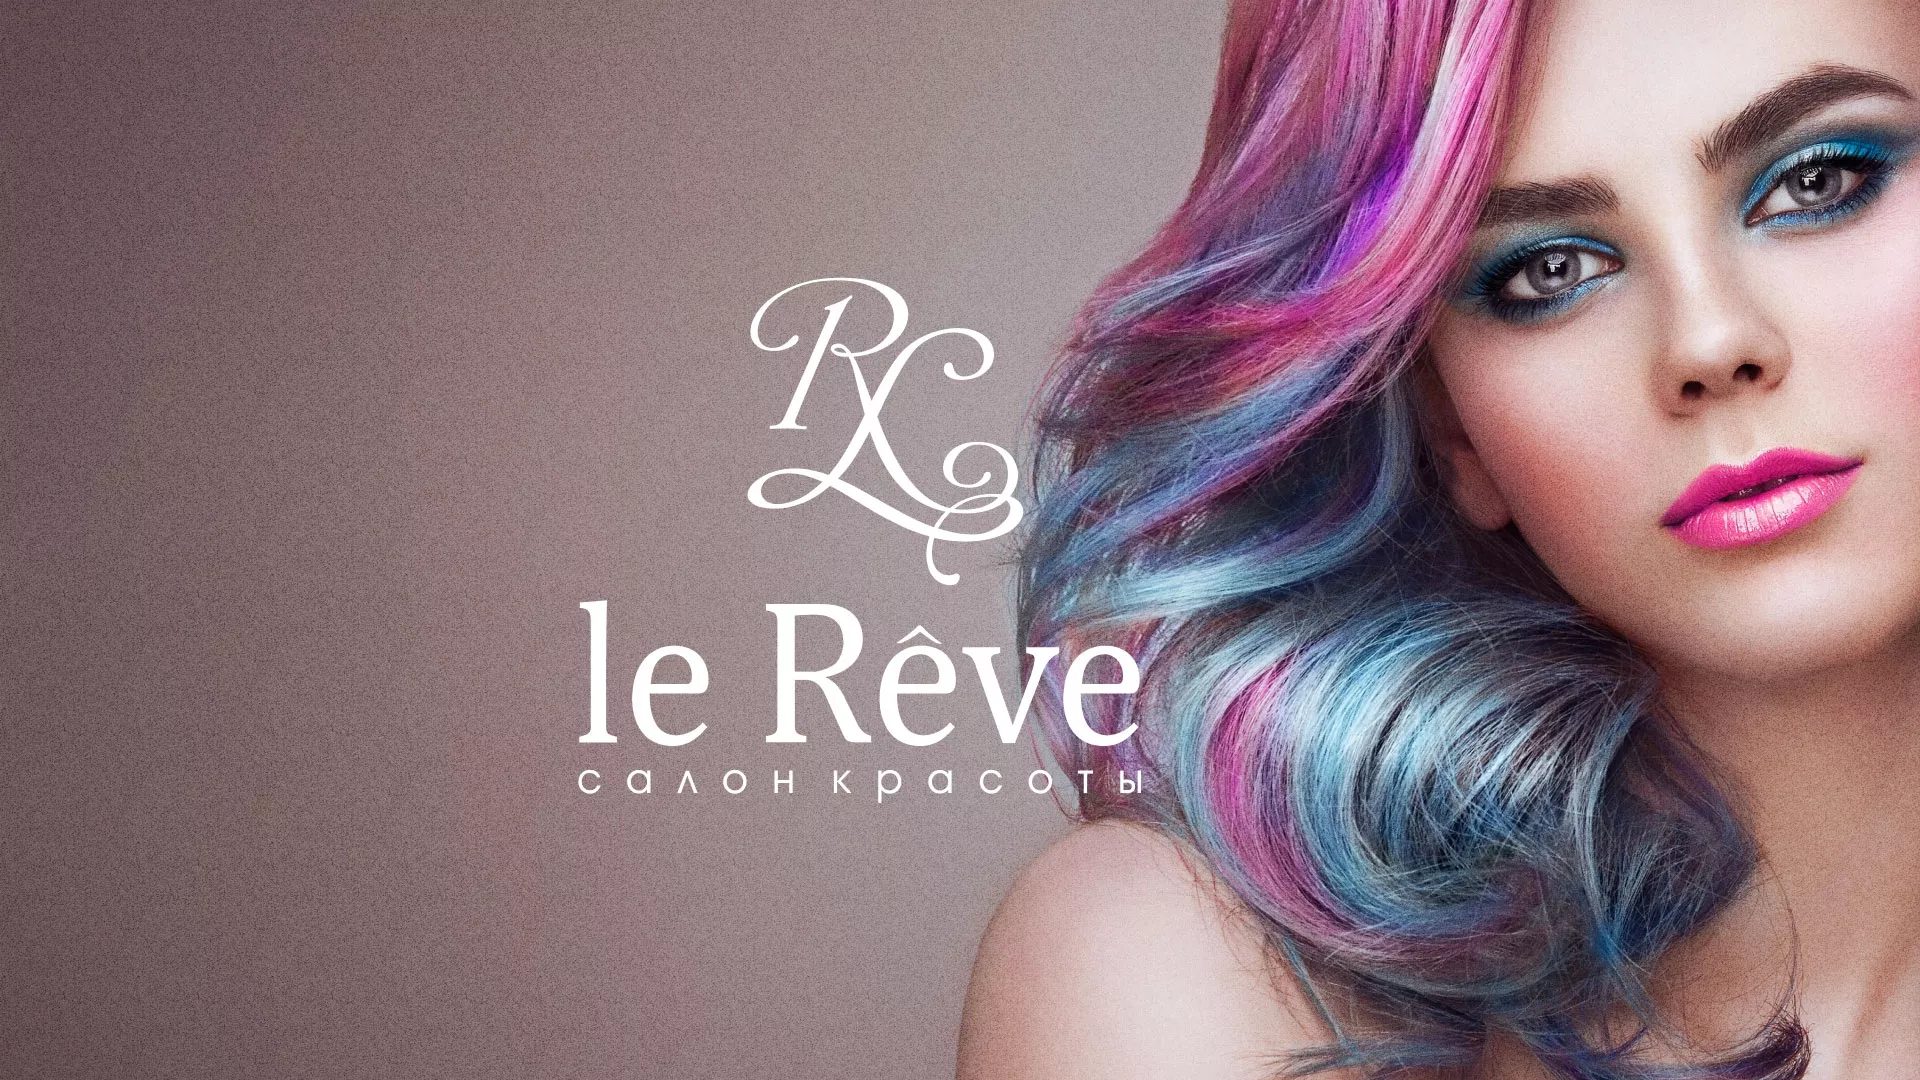 Создание сайта для салона красоты «Le Reve» в Болхове